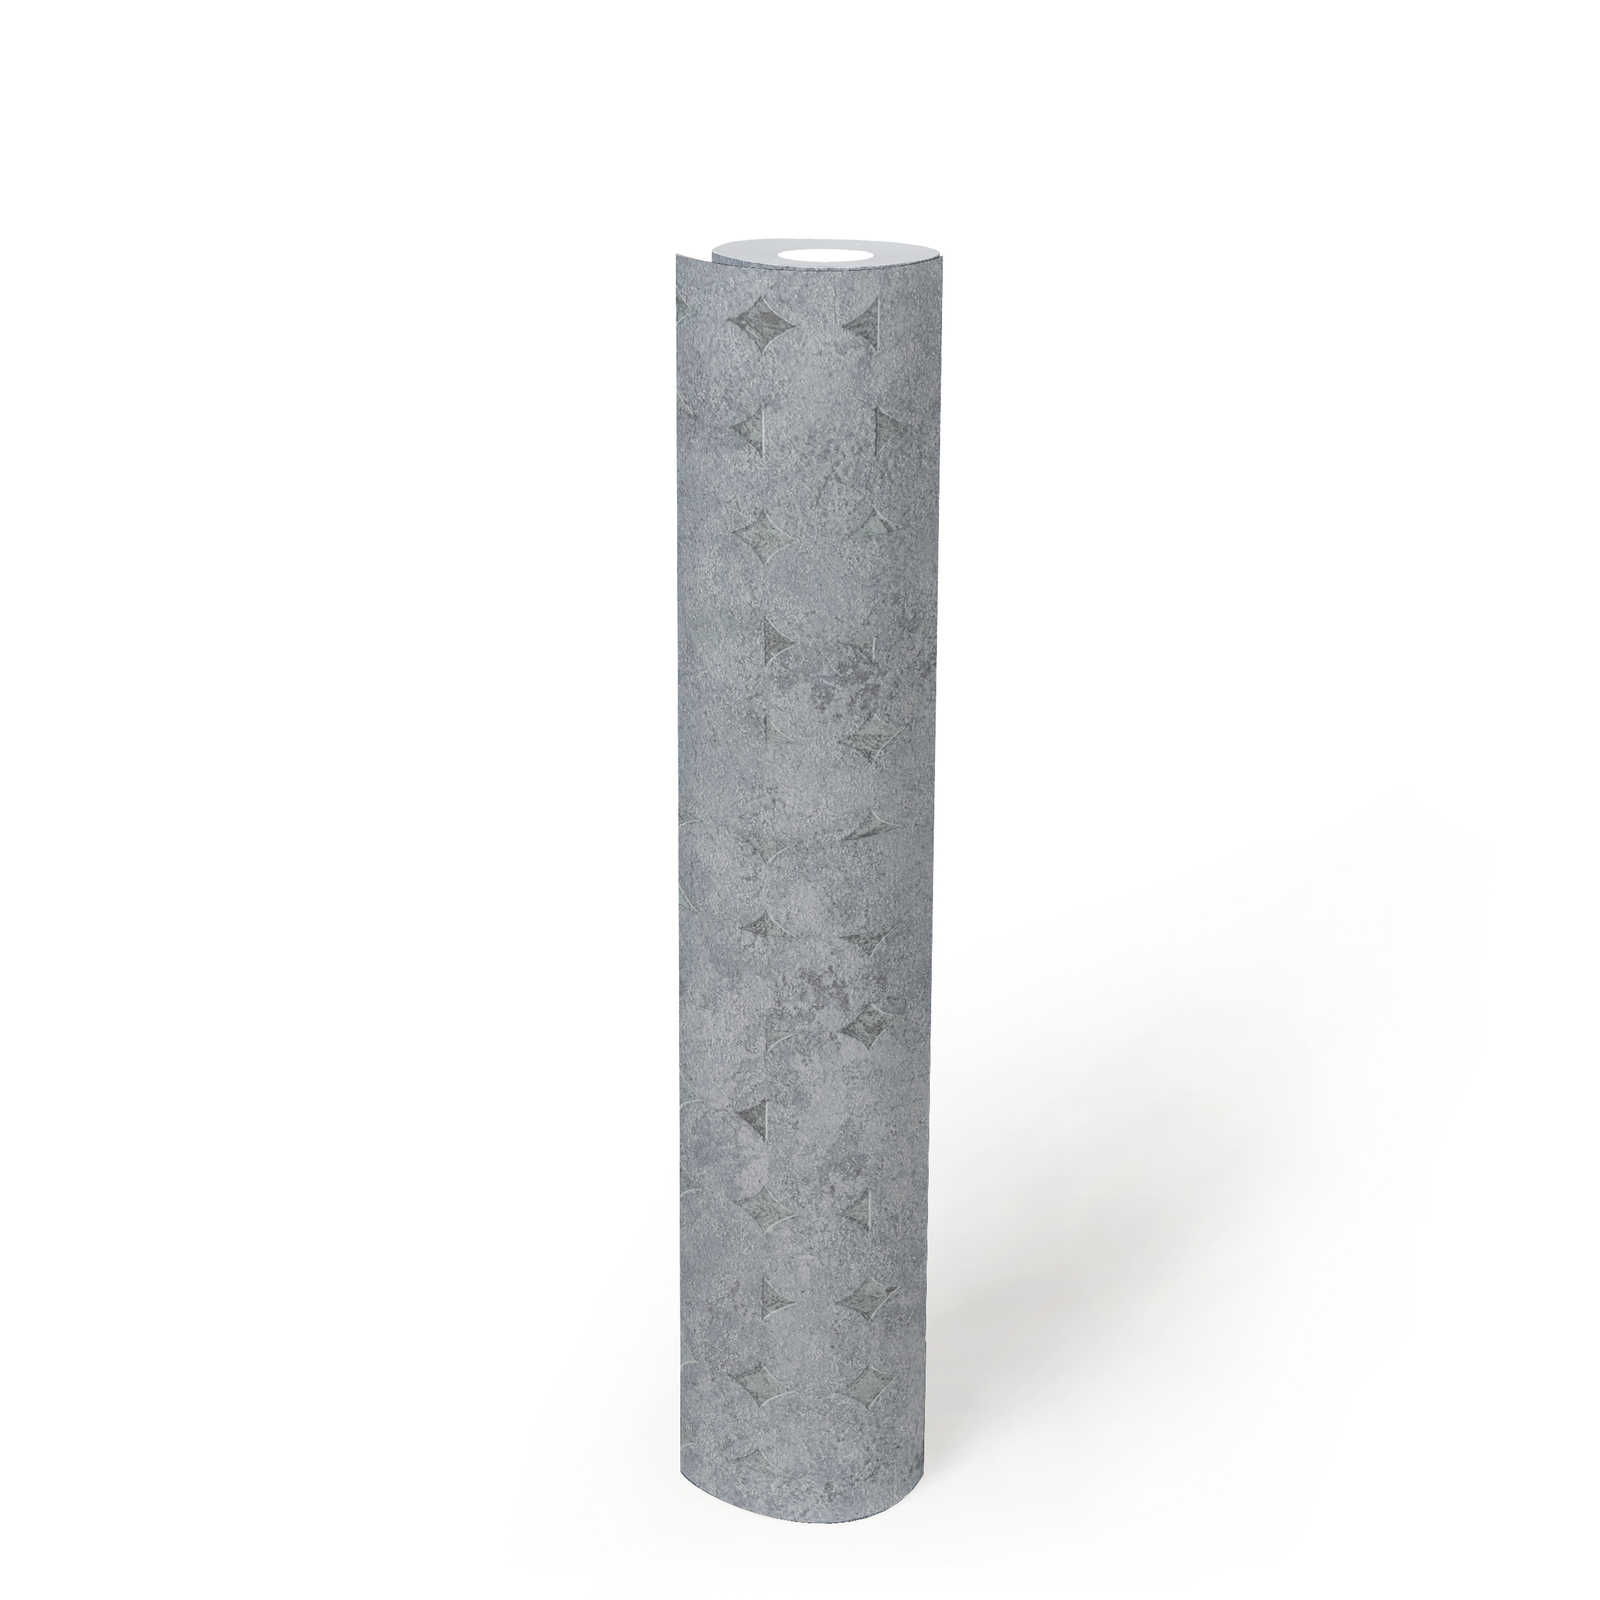             Papel pintado no tejido de un color con estructura y dibujo rugoso - gris, plata
        